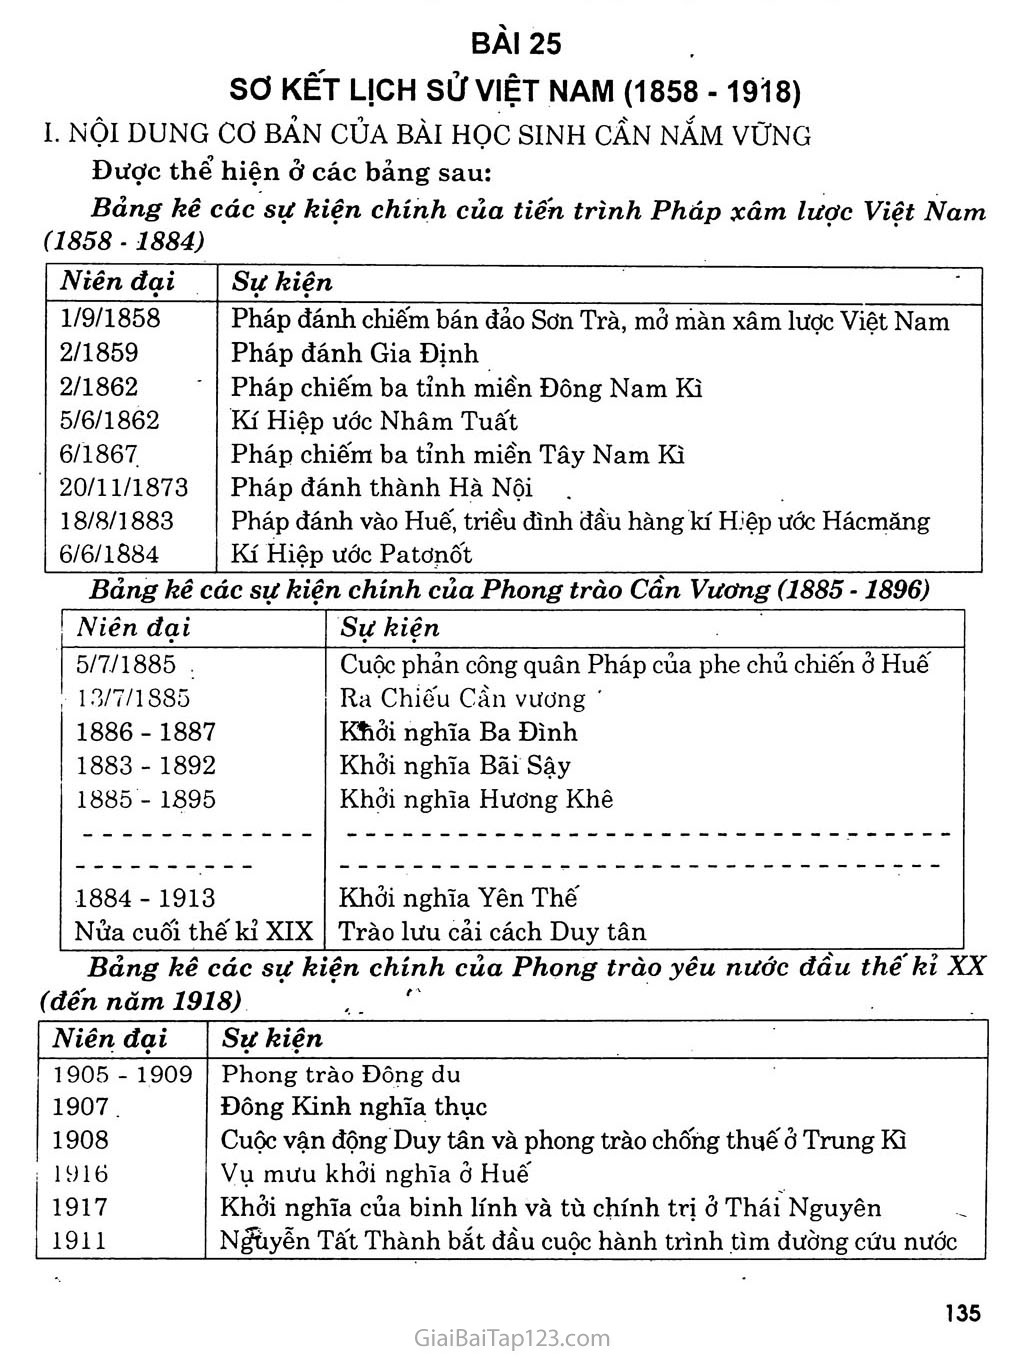 Sơ kết lịch sử Việt Nam (1858 - 1918) trang 1